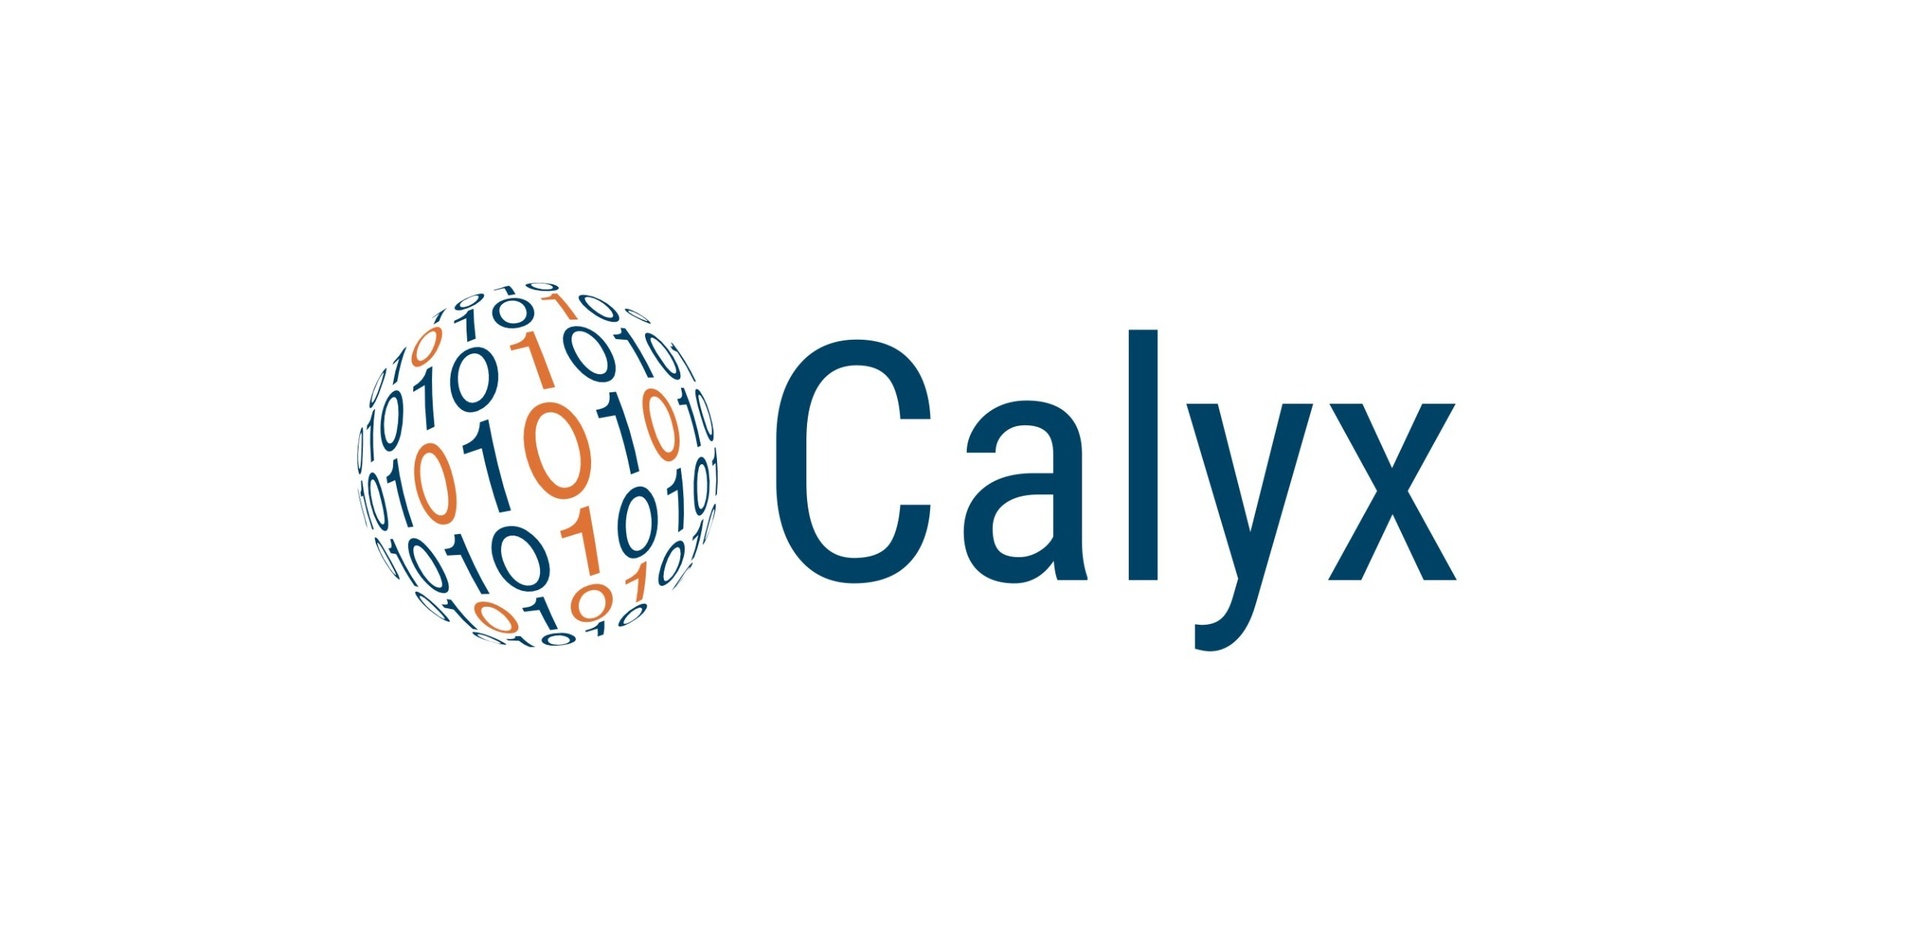 Calyx Servicios SA